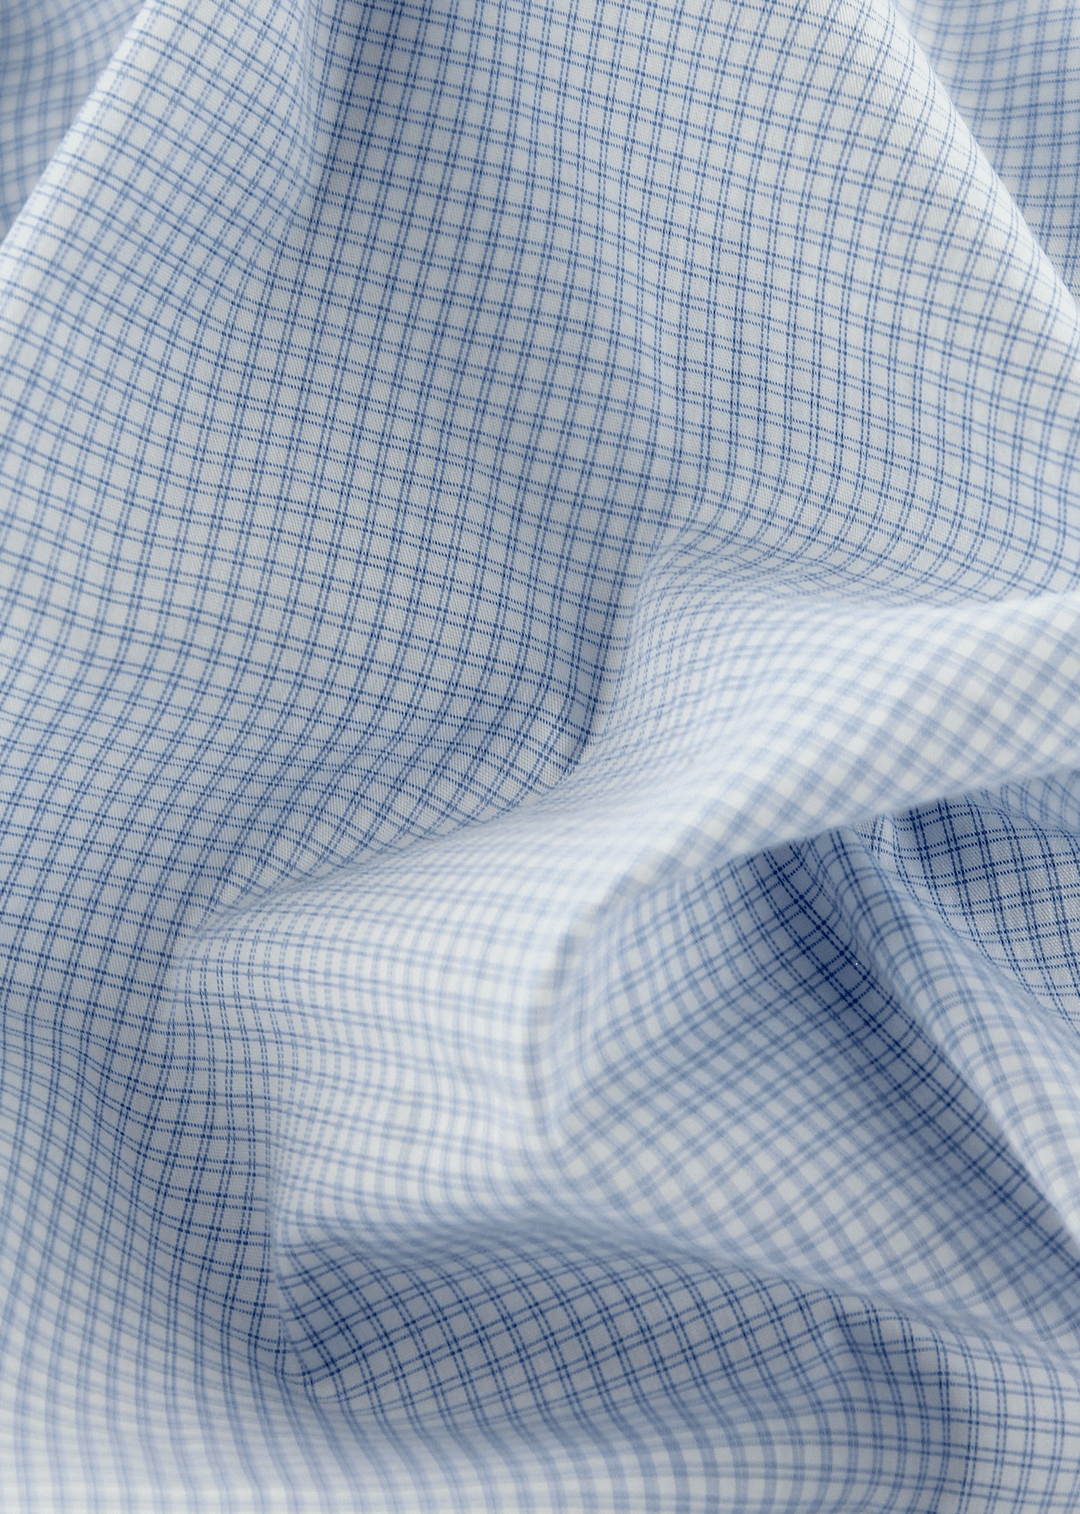 Tissu 100% coton haut de gamme bleu à carreaux | Cotton Park